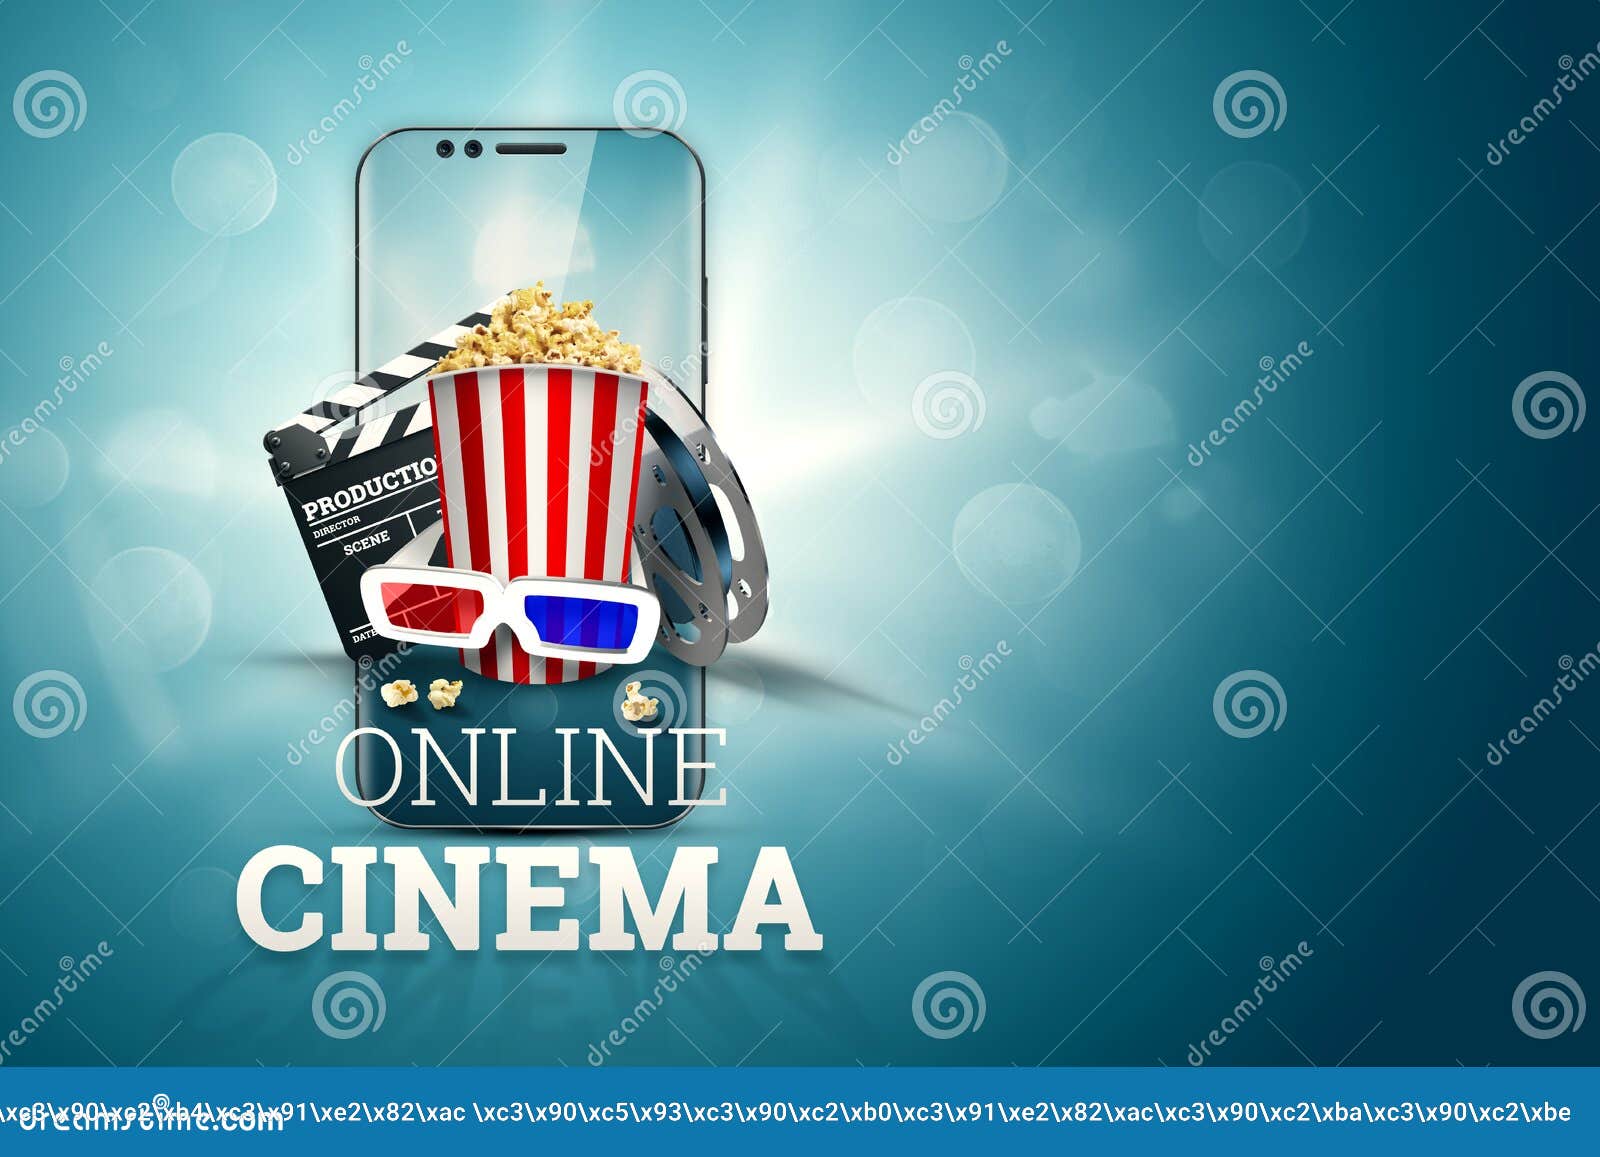 Cinema online